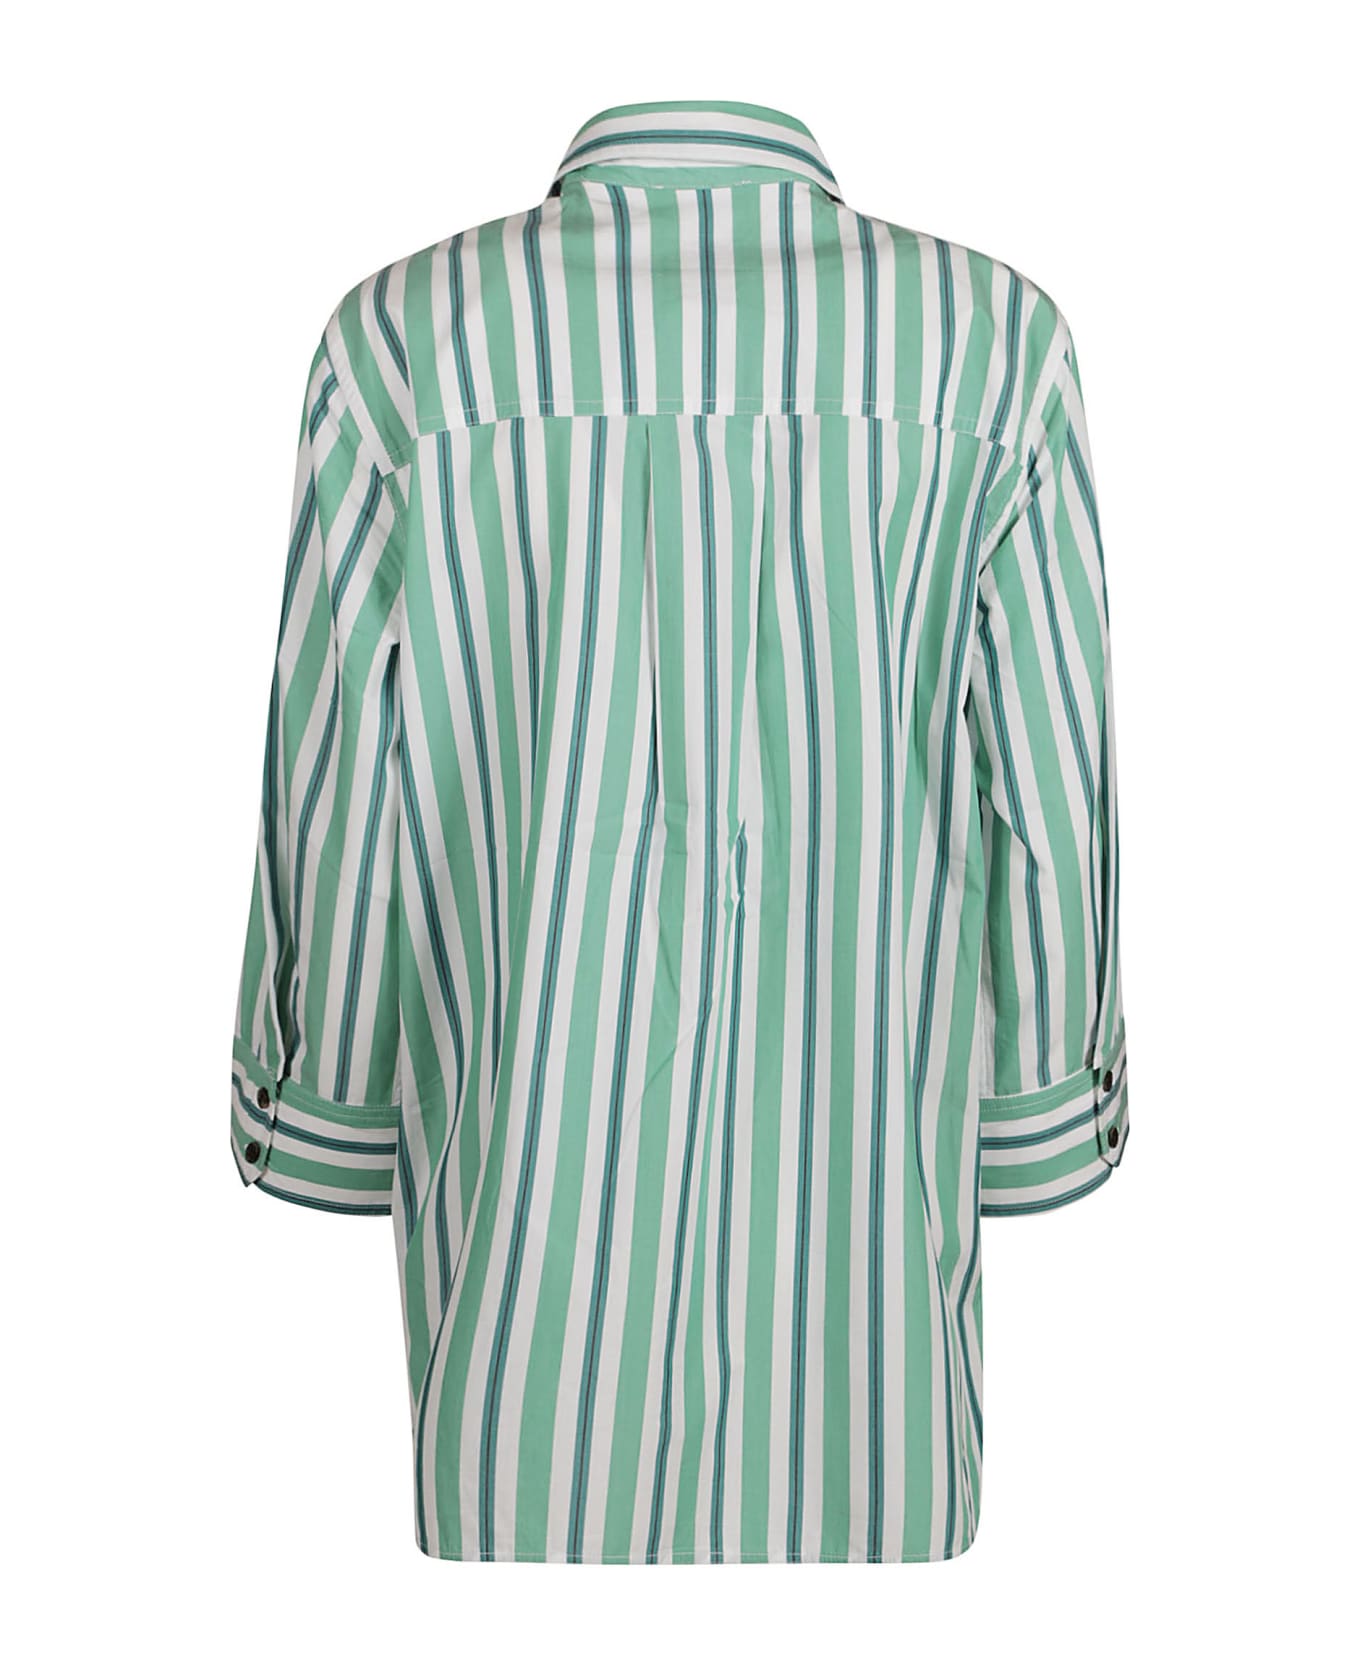 Ganni Stripe Print Shirt - Creme de mente シャツ